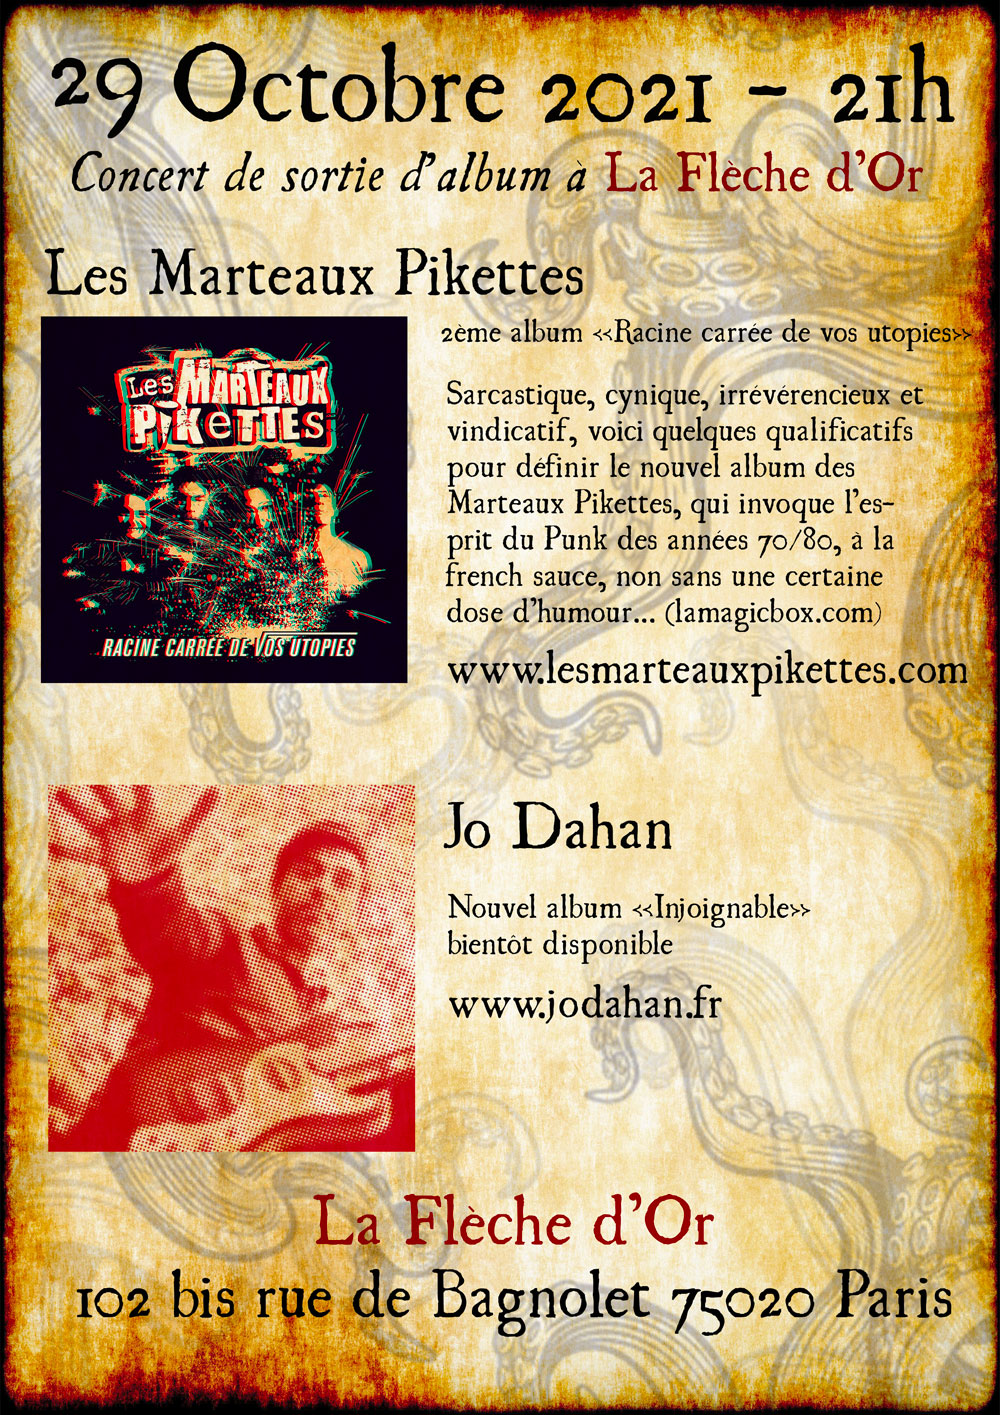 Les Marteaux Pikettes - infos concert 29 octobre 2021